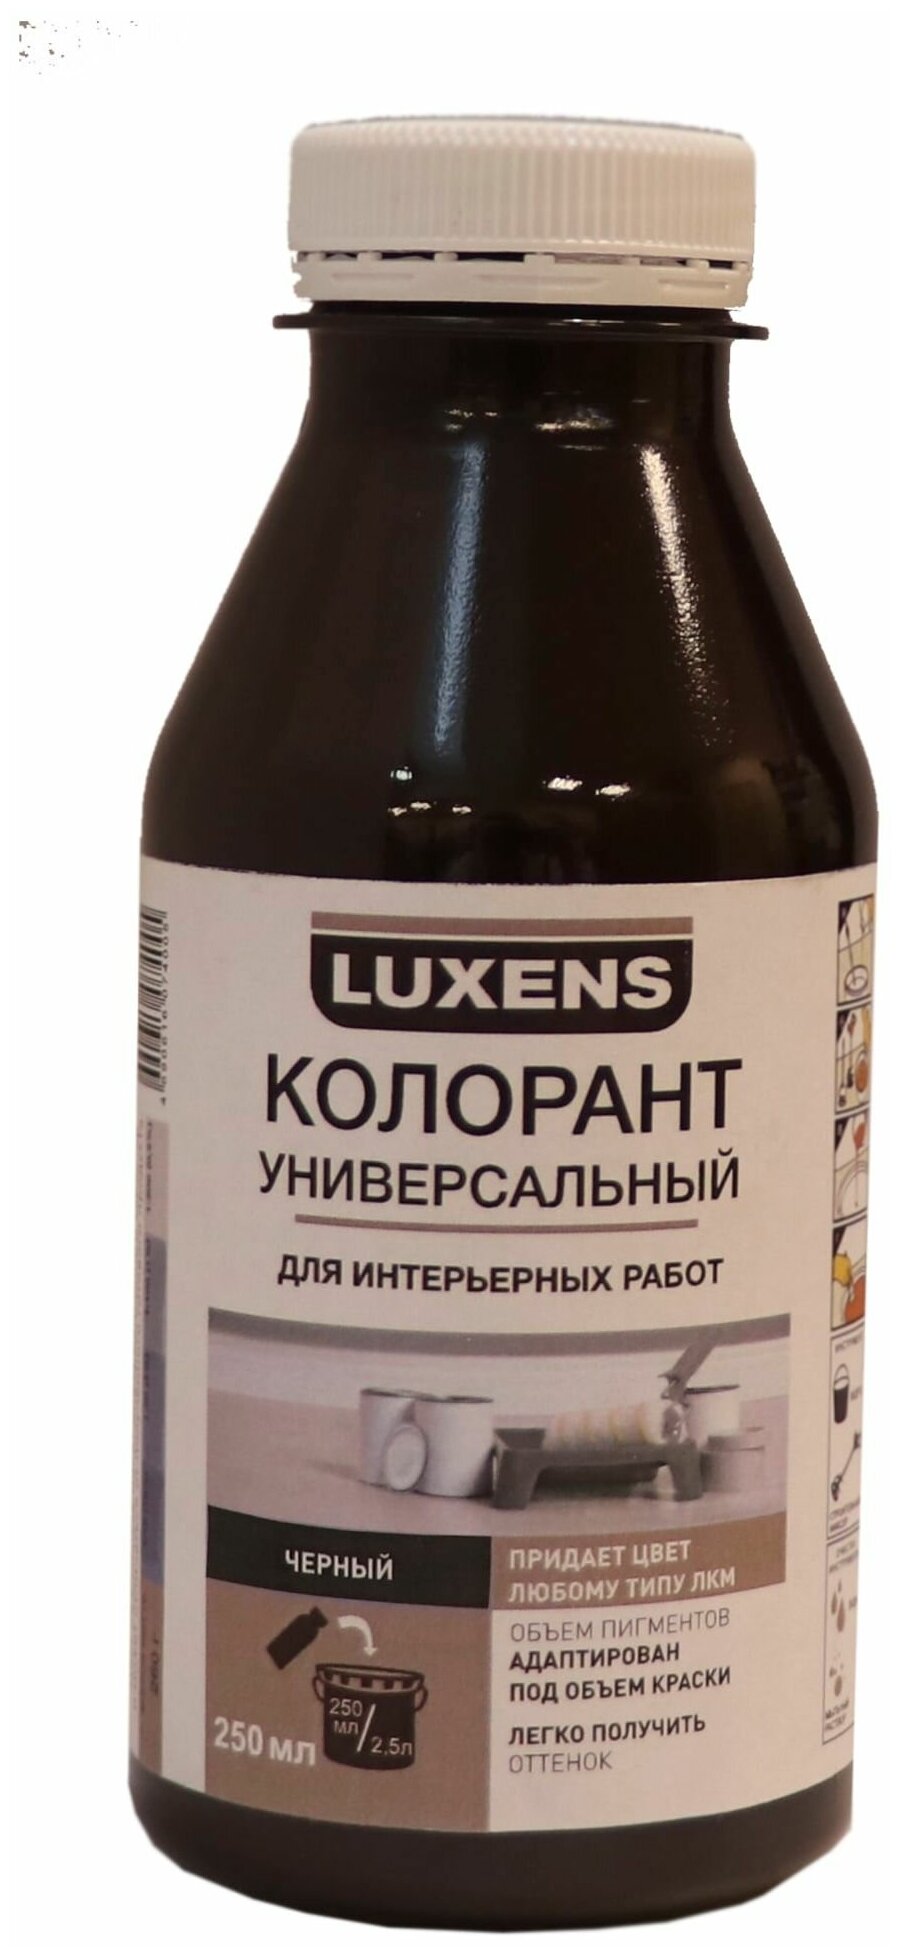 Колеровочная паста Luxens колорант универсальный для интерьерных работ, черный, 0.25 л